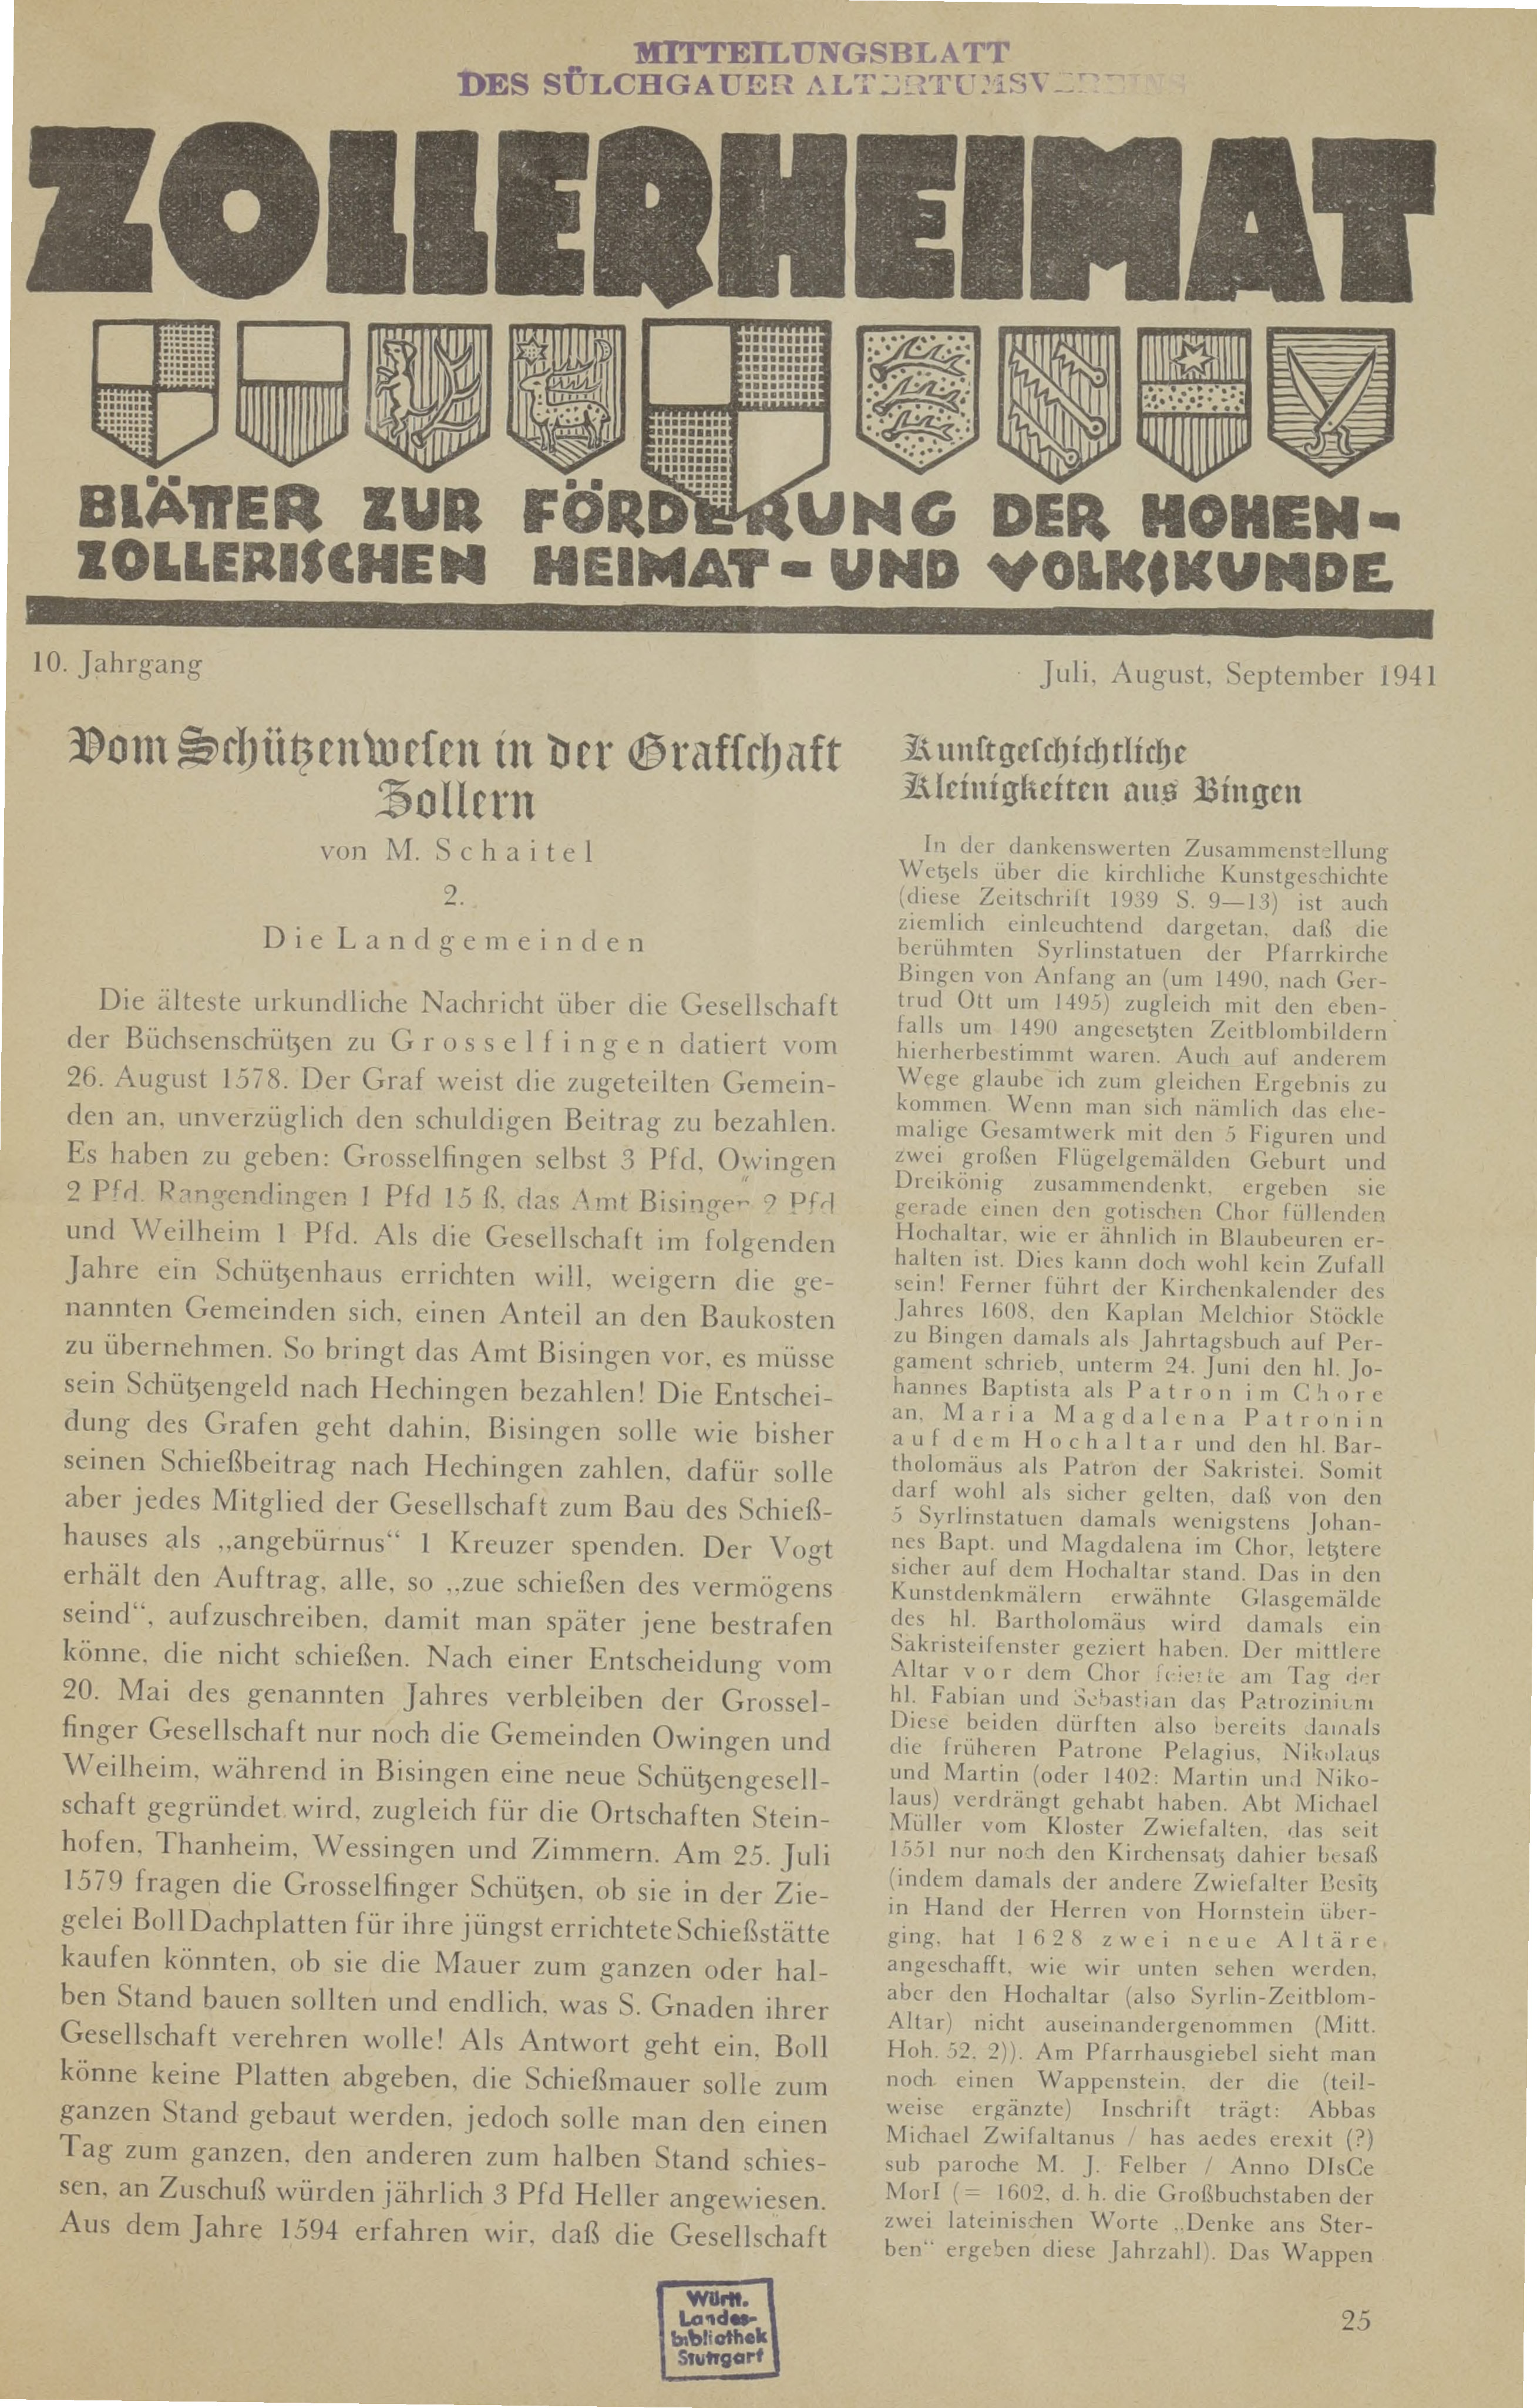                     Ansehen Bd. 10 Nr. 3 (1941): Zollerheimat
                